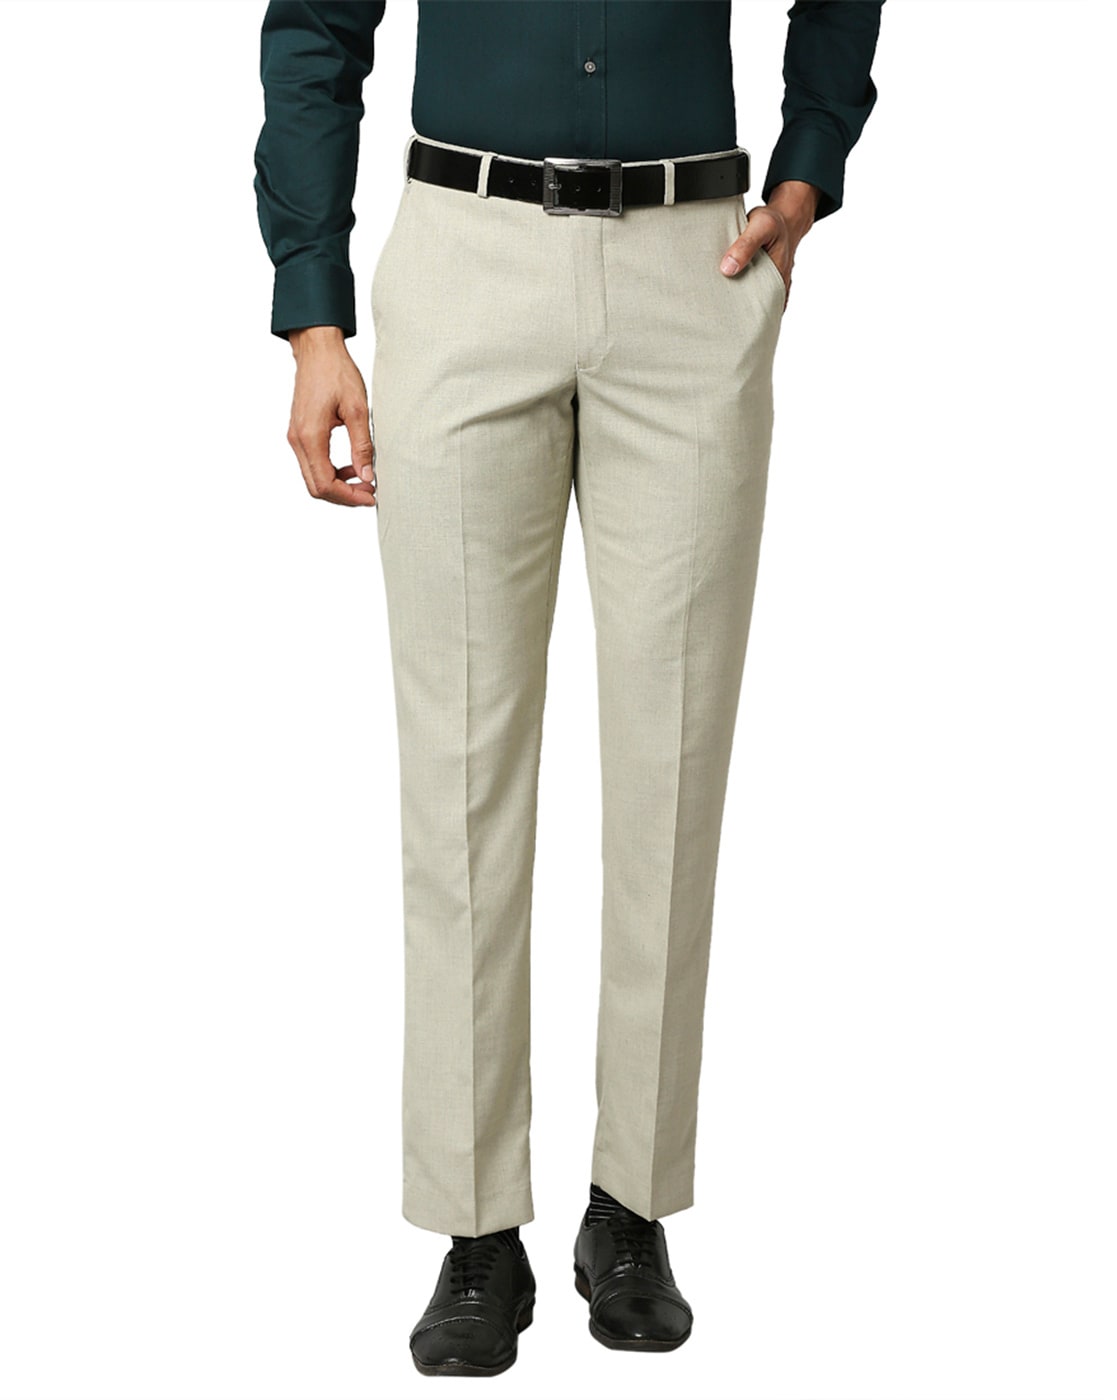 Buy Park Avenue Blue Super Slim Fit Trousers for Men Online  Tata CLiQ